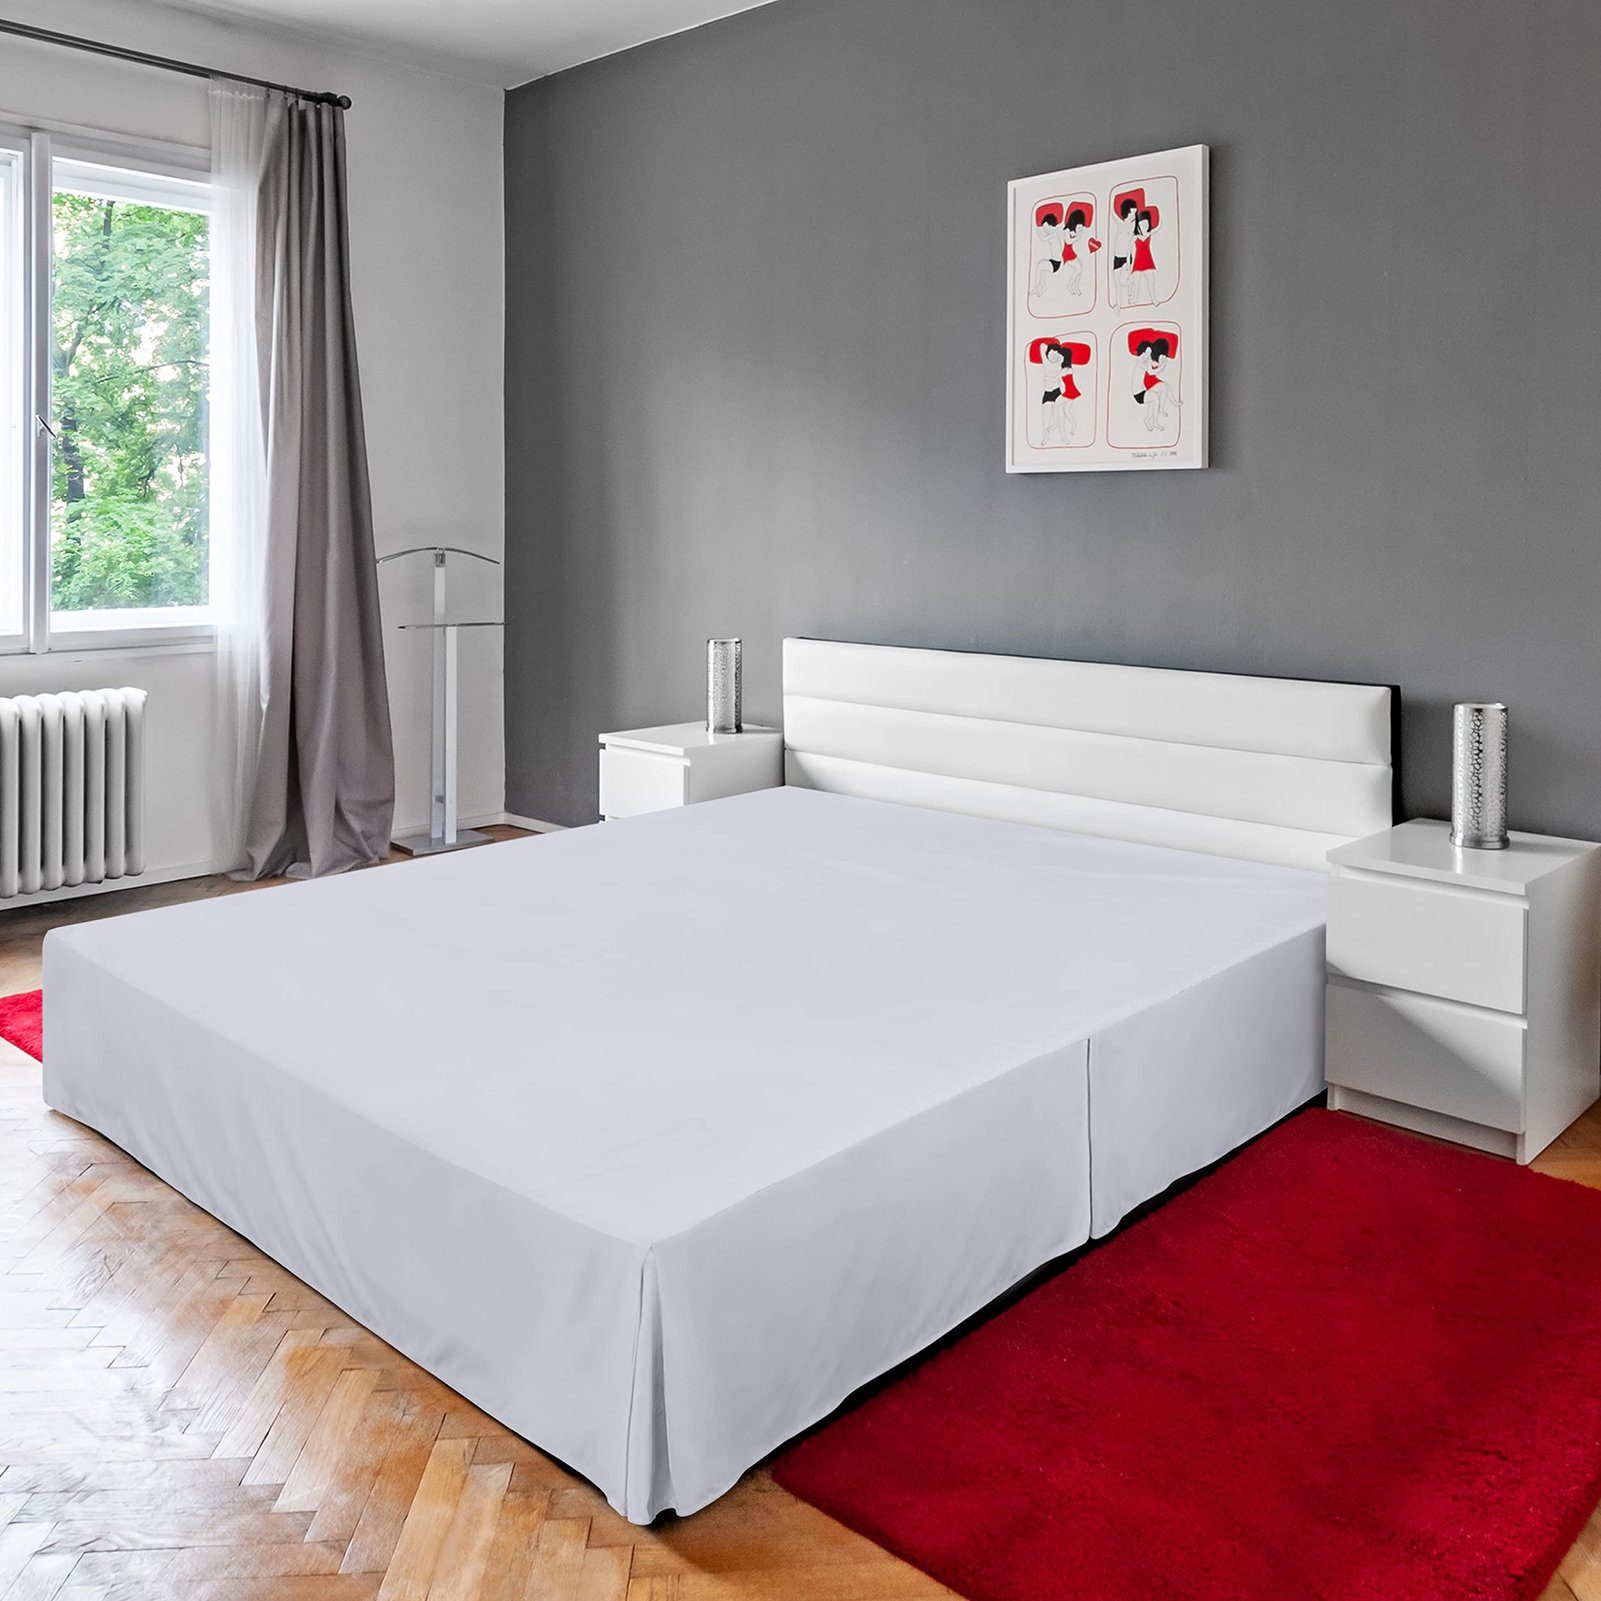 Tagesdecke Hotel-Bettrock im europäischen Stil Staubdicht Einfarbig Einteilig Weiß Tagesdecke, Schürze Bettkasten-Abdeckung, Rutaqian